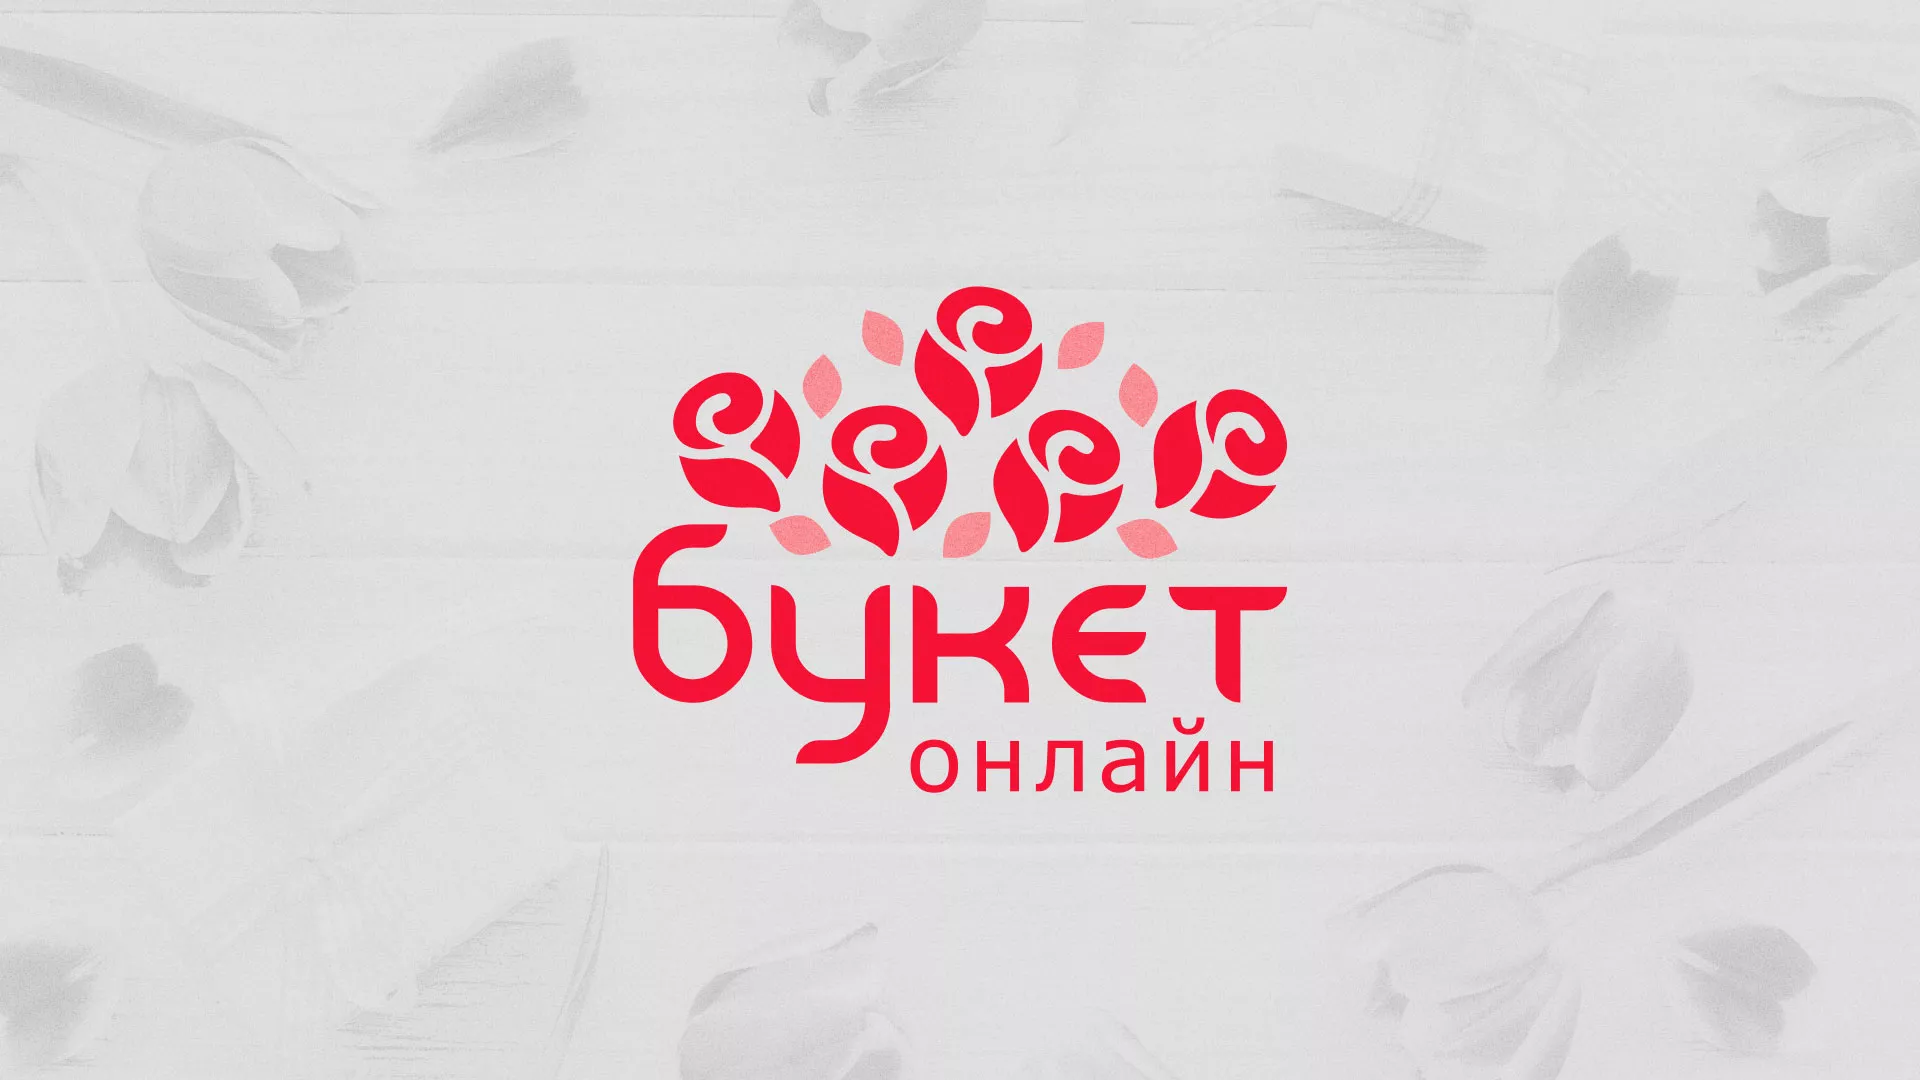 Создание интернет-магазина «Букет-онлайн» по цветам в Канске